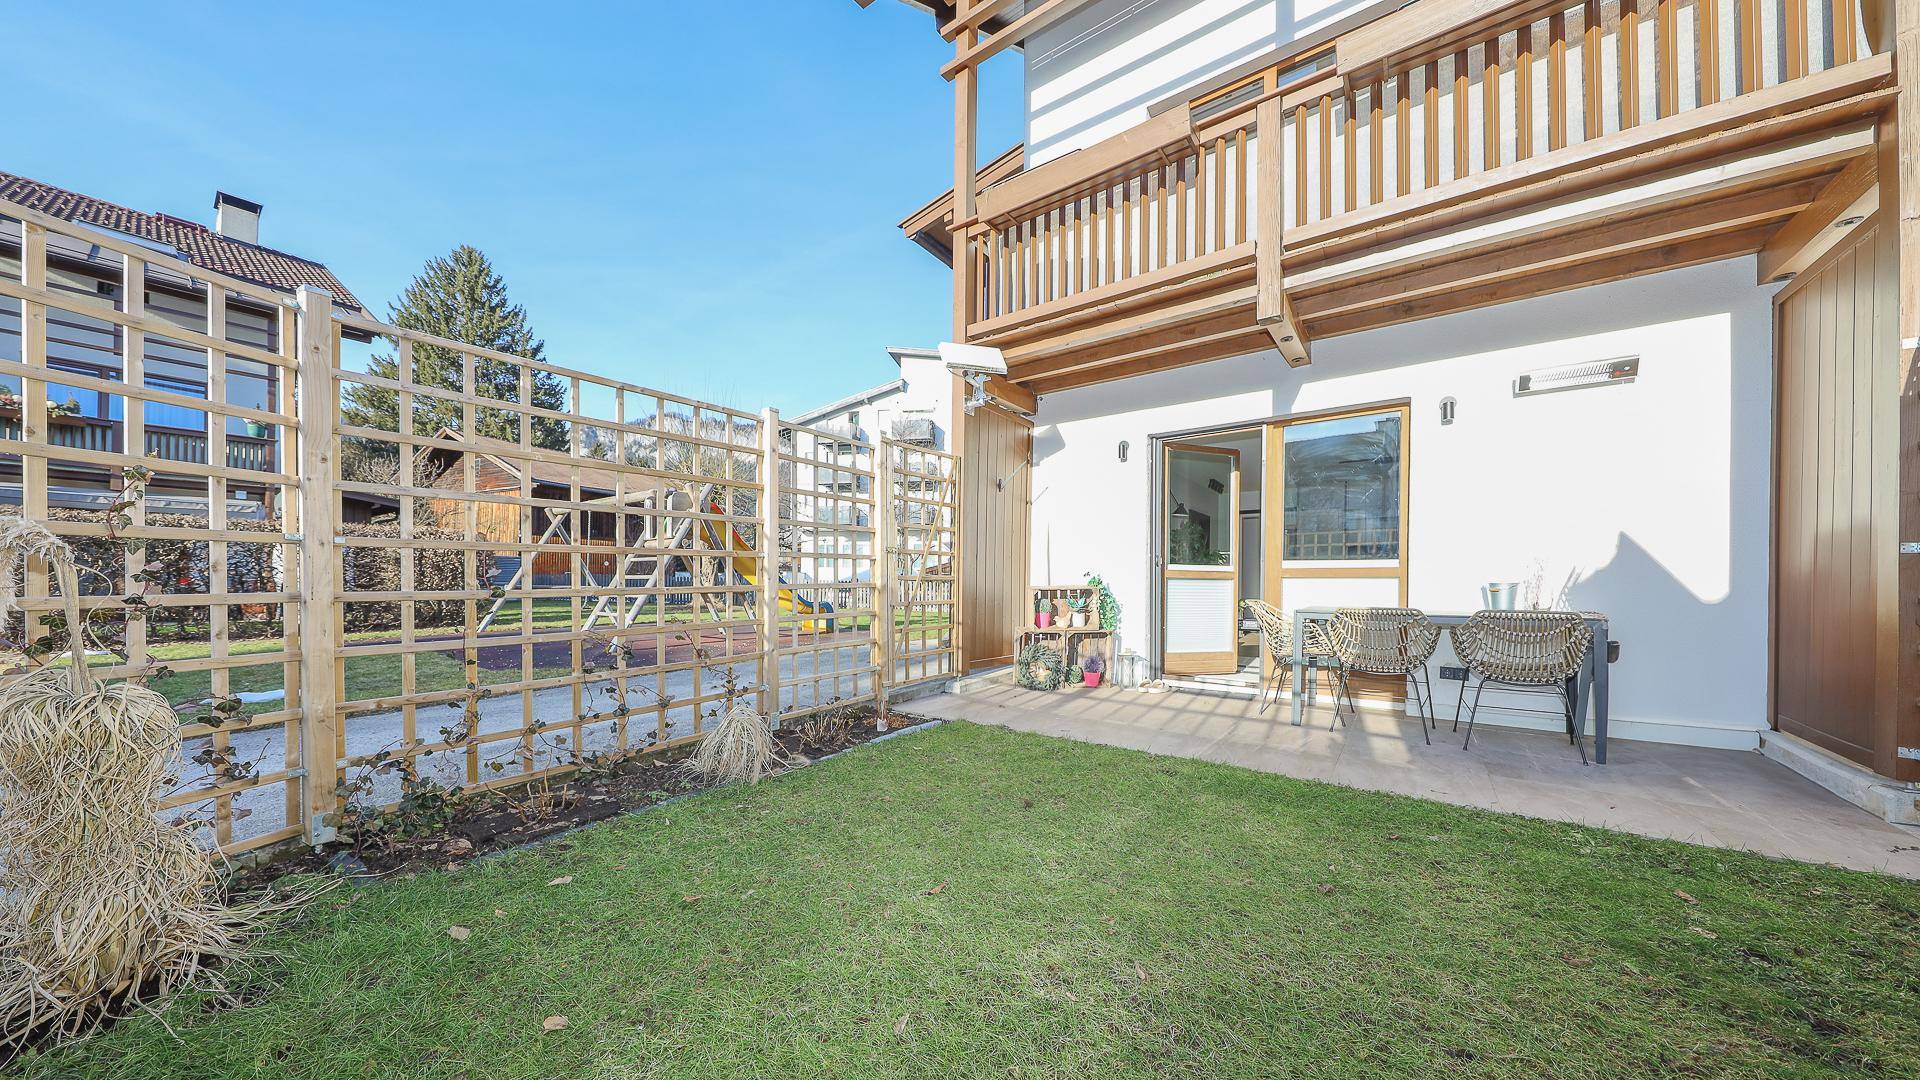 KITZIMMO-renovierte Wohnung kaufen - Immobilien St. Johann in Tirol.